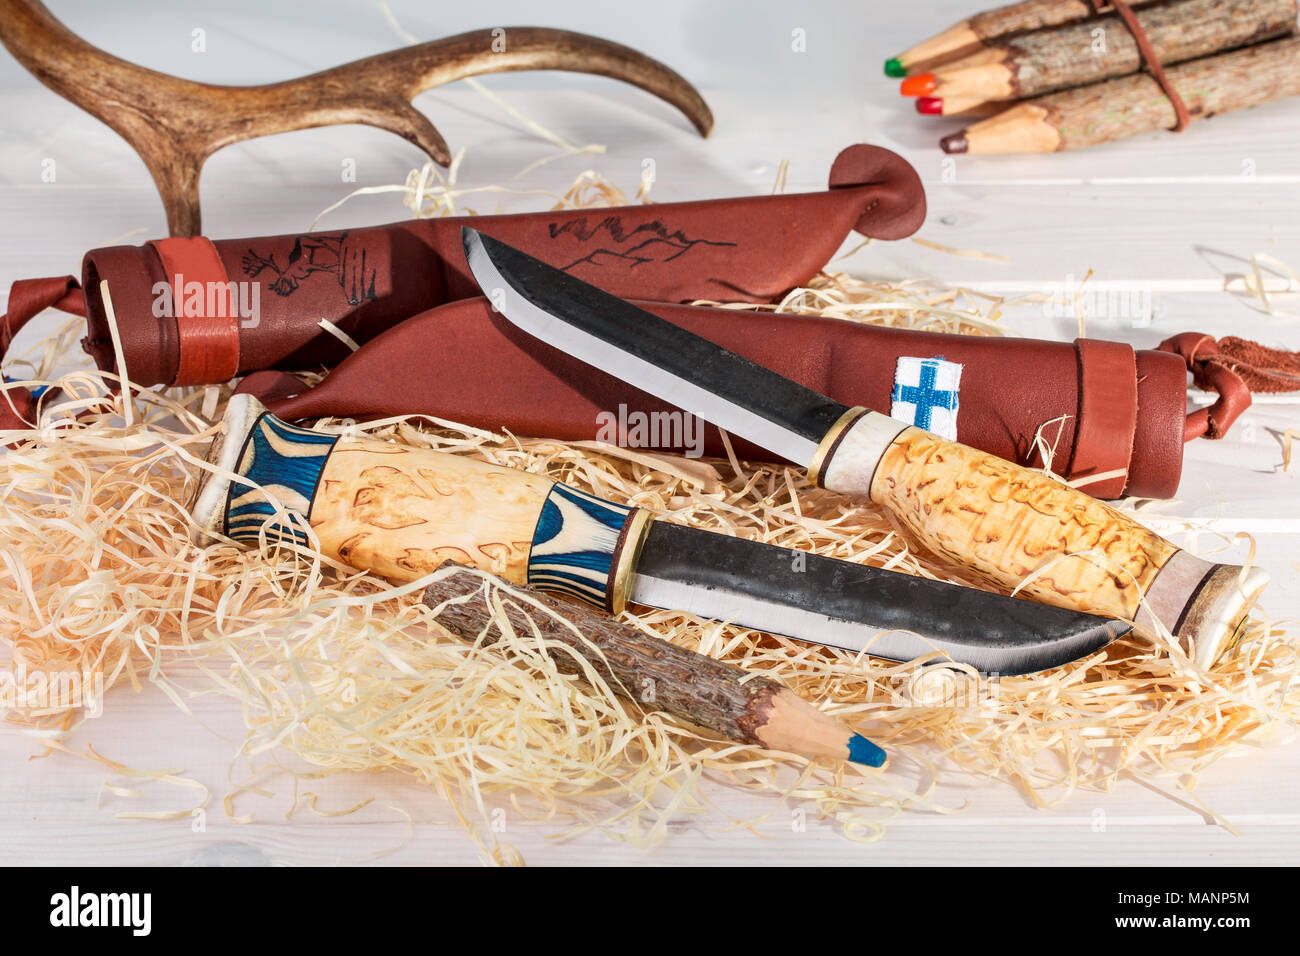 Ceinture traditionnel finlandais Puukko (couteaux) avec pointe courbée et fourreau en cuir fait main à partir de bois, de corne de renne et de l'acier, la Finlande Y 100 Banque D'Images